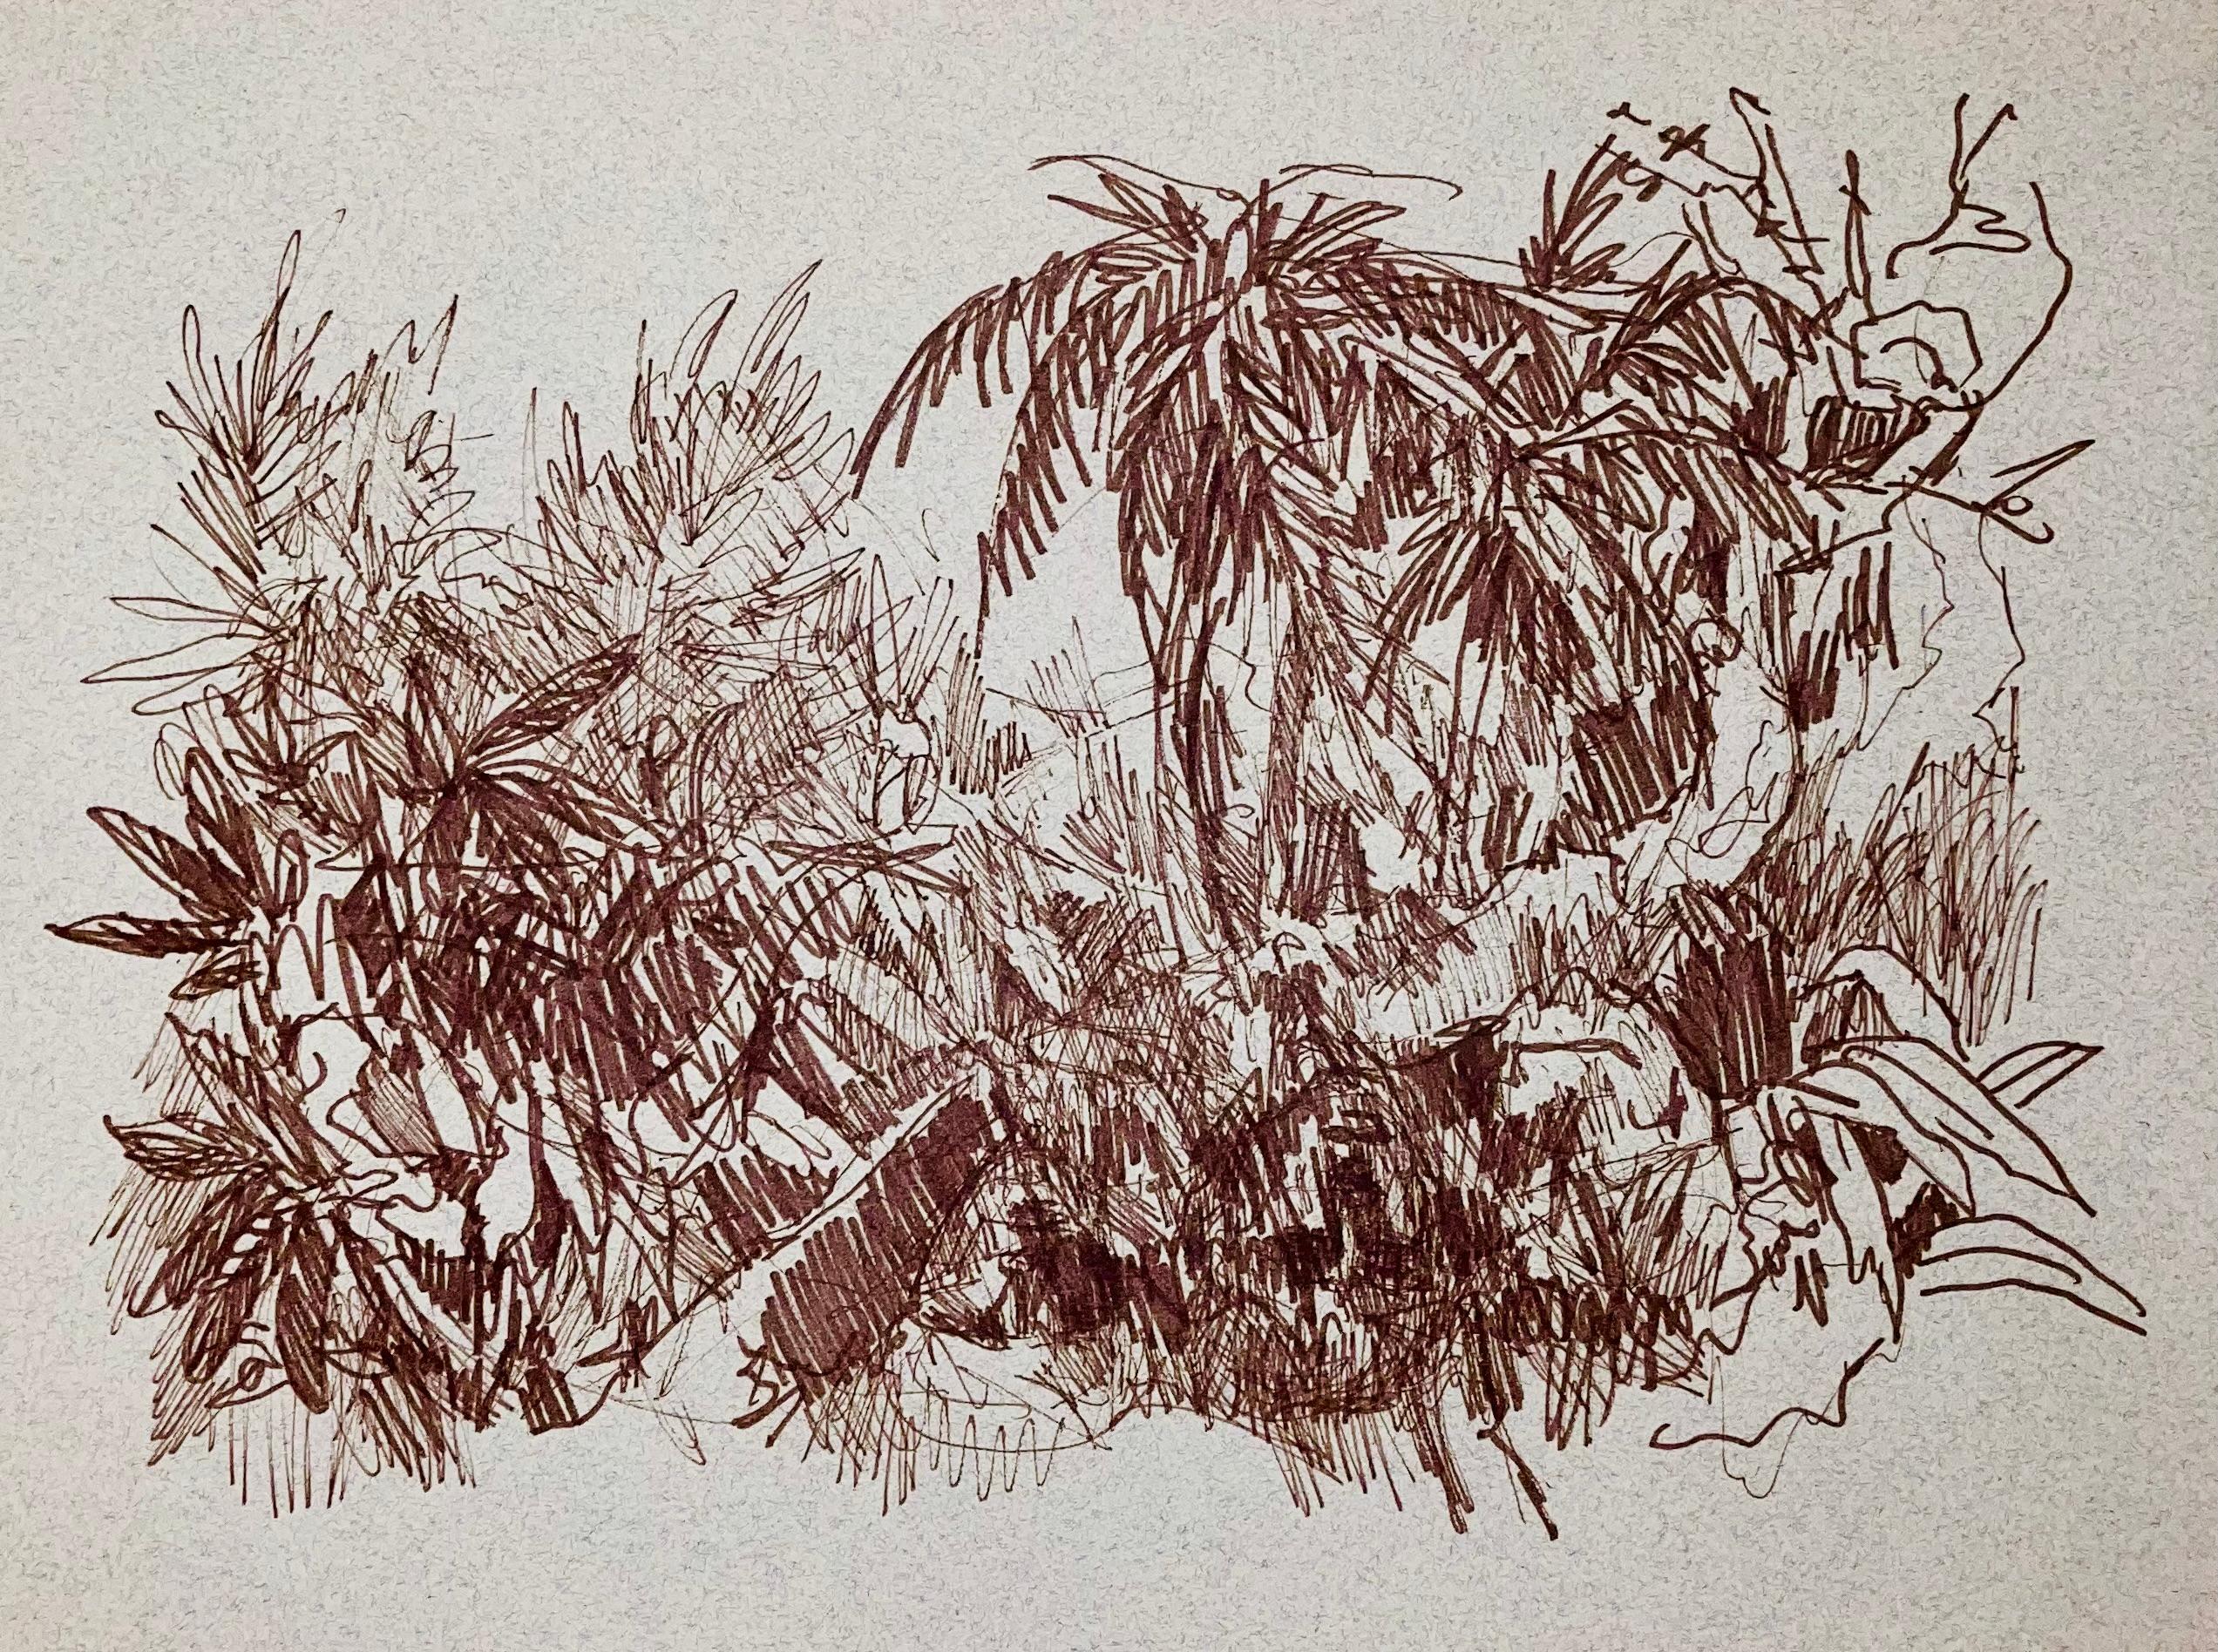 (Abstrakte tropische Landschaft) Ohne Titel, 2001, Ian Hornak - Zeichnung